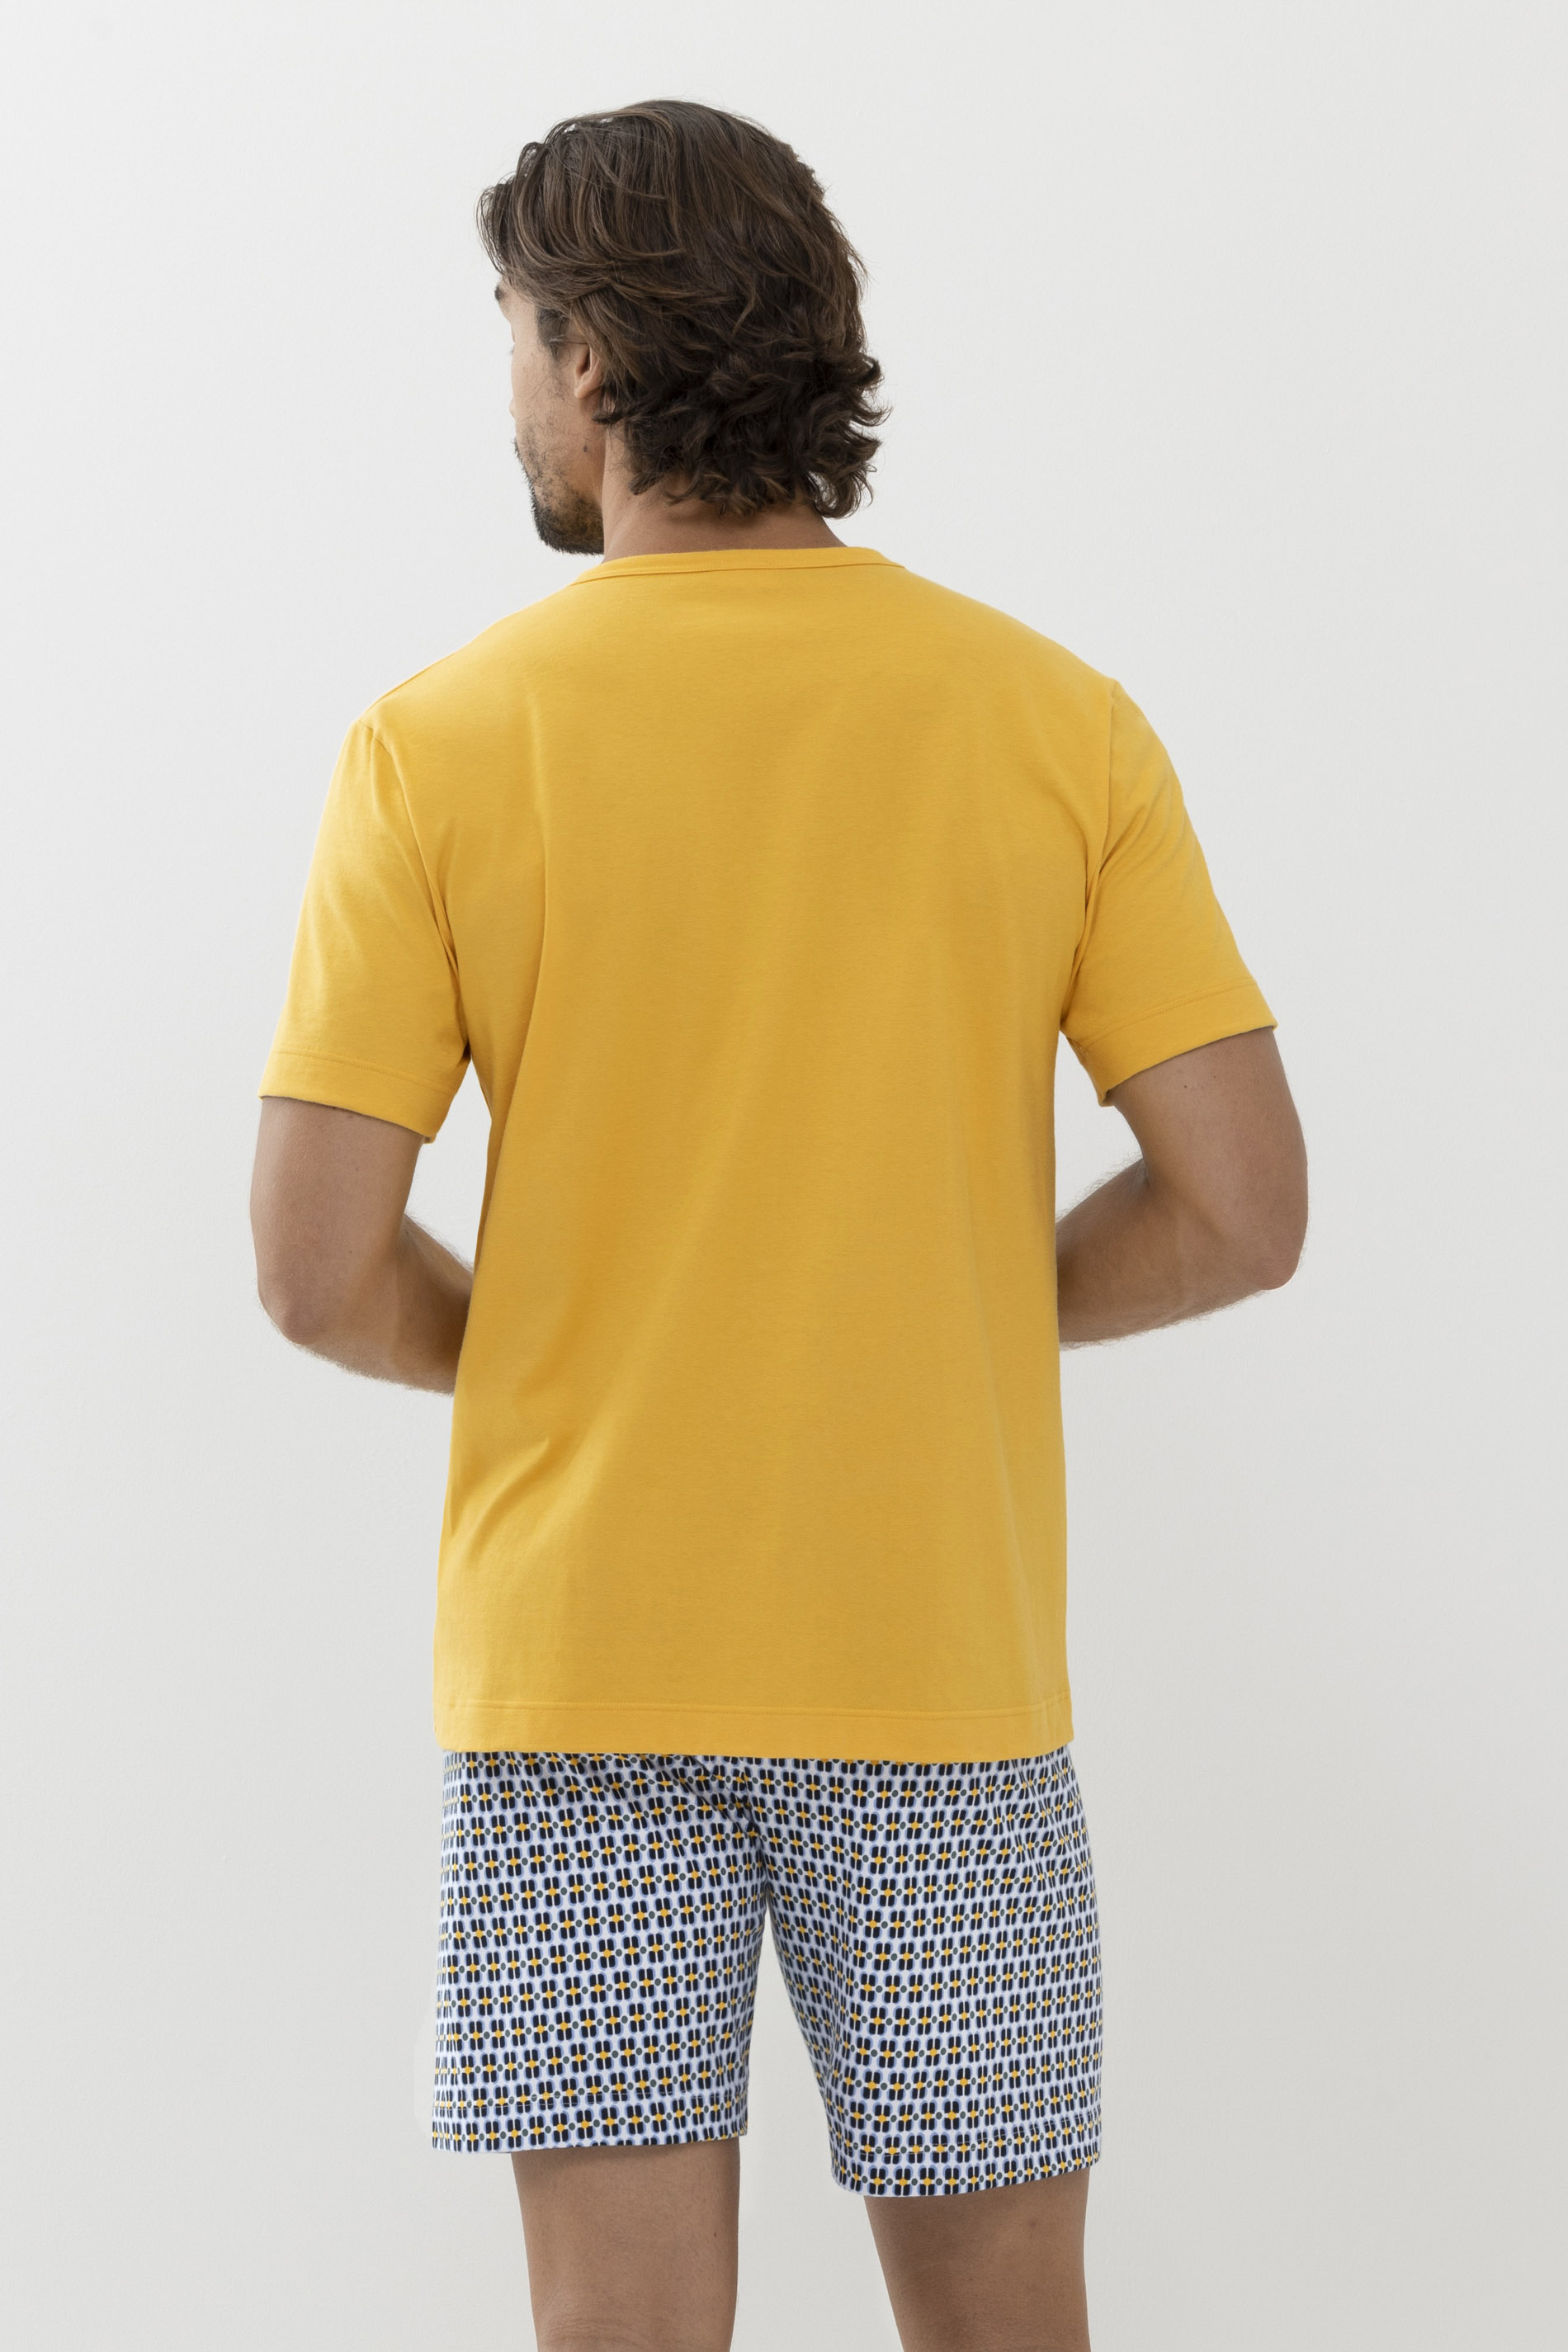 Pyjamas Serie 70TIES Rear View | mey®